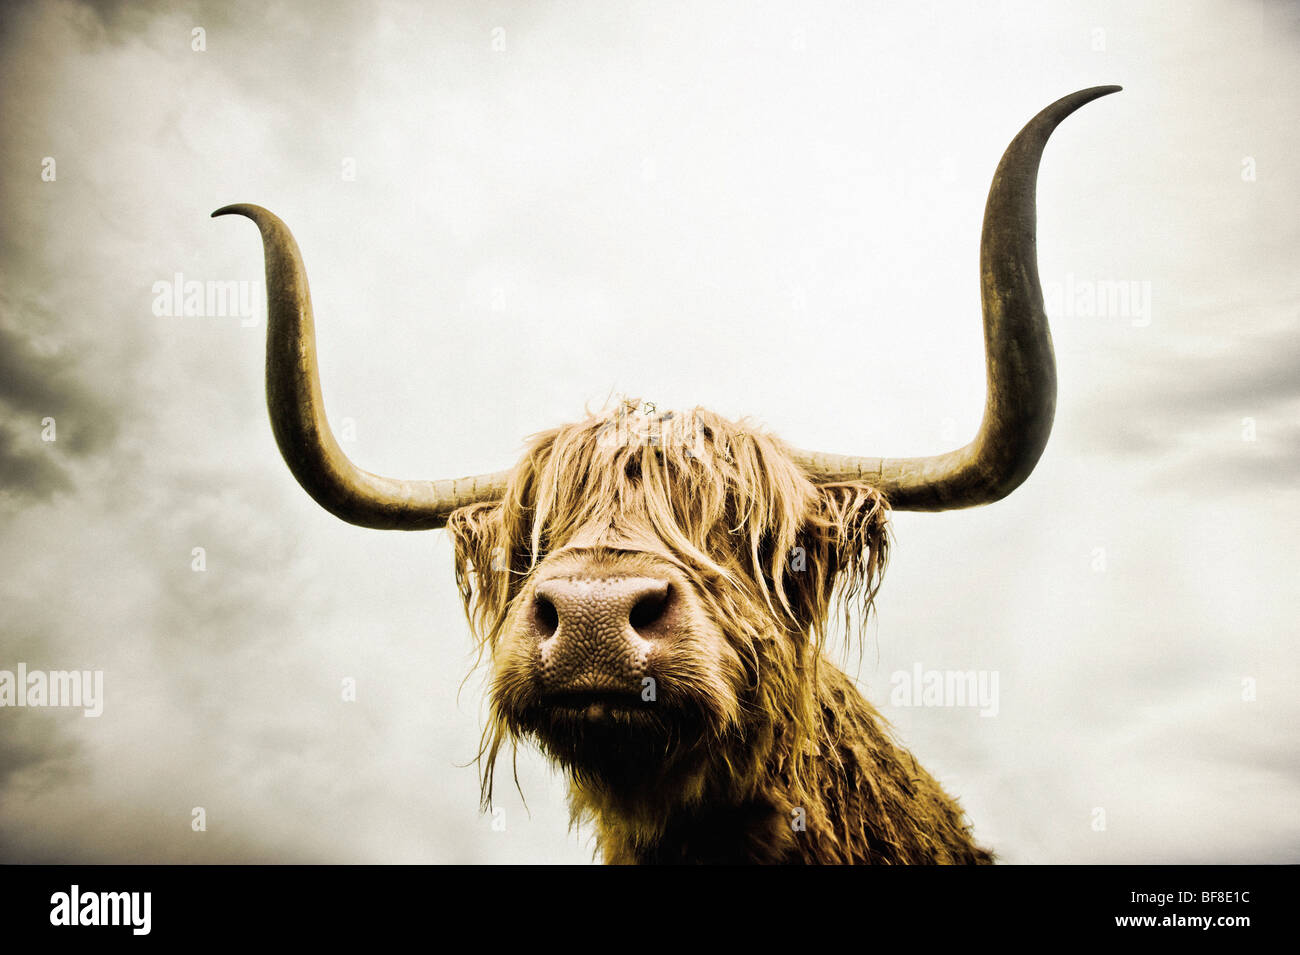 Nahaufnahme des Kopfes einer Highland Cow mit ihren Augen, die von ihrem langen, zotteligen Haar bedeckt sind, aufgenommen aus einem niedrigen Weitwinkel. Stockfoto